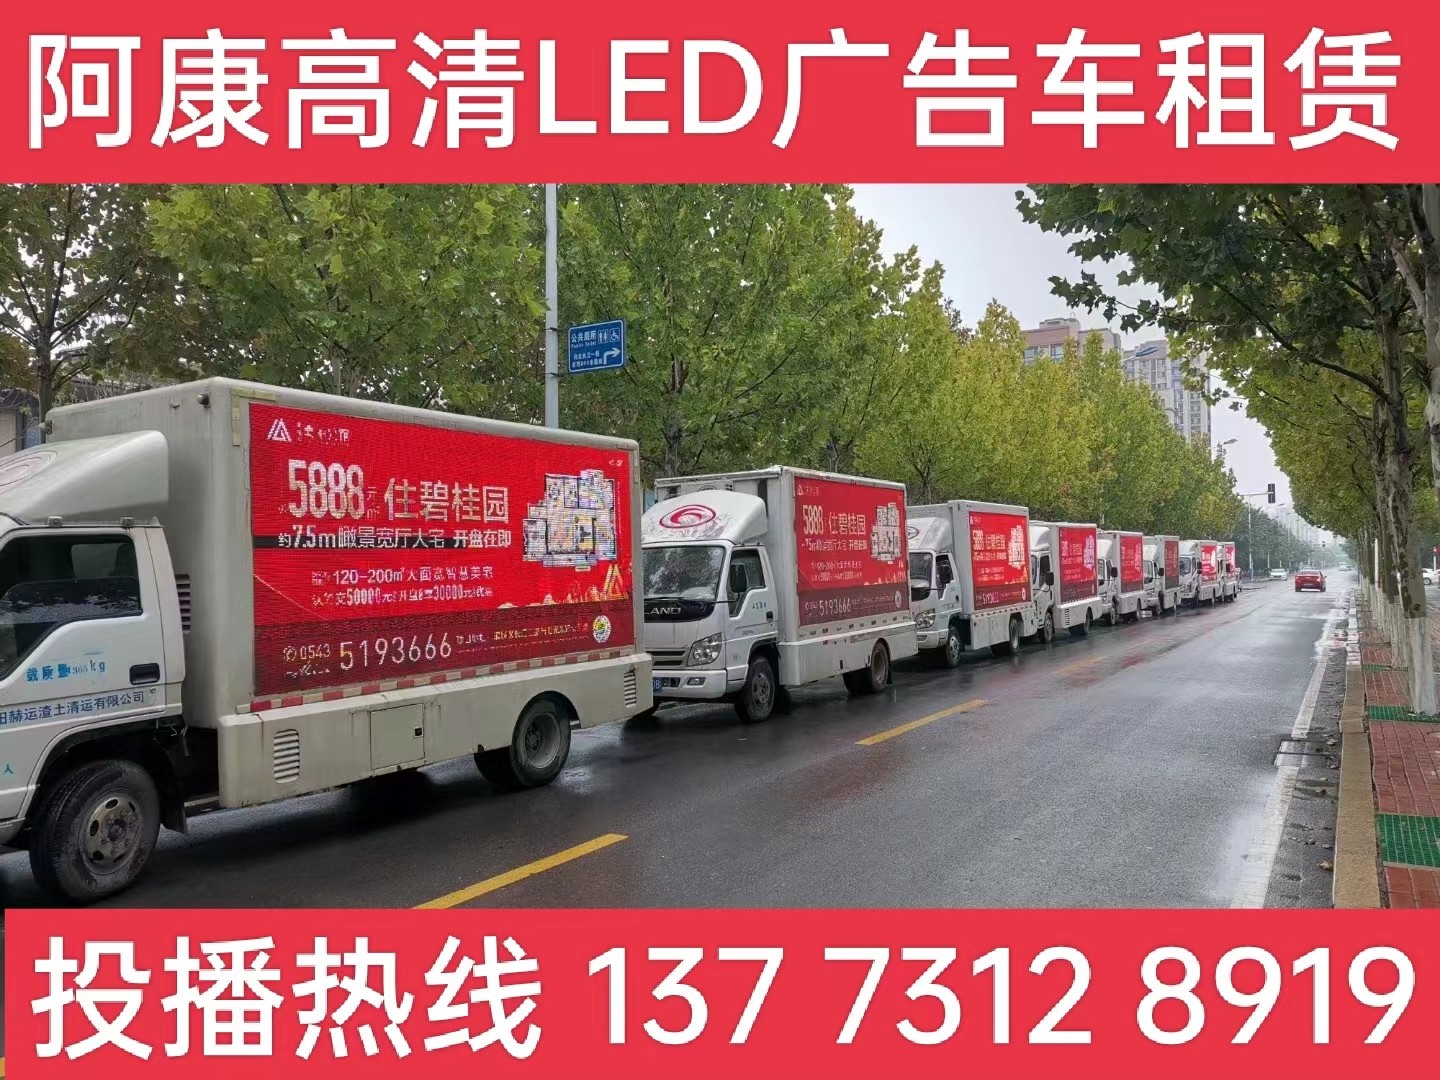 扬州宣传车租赁公司-楼盘LED广告车投放